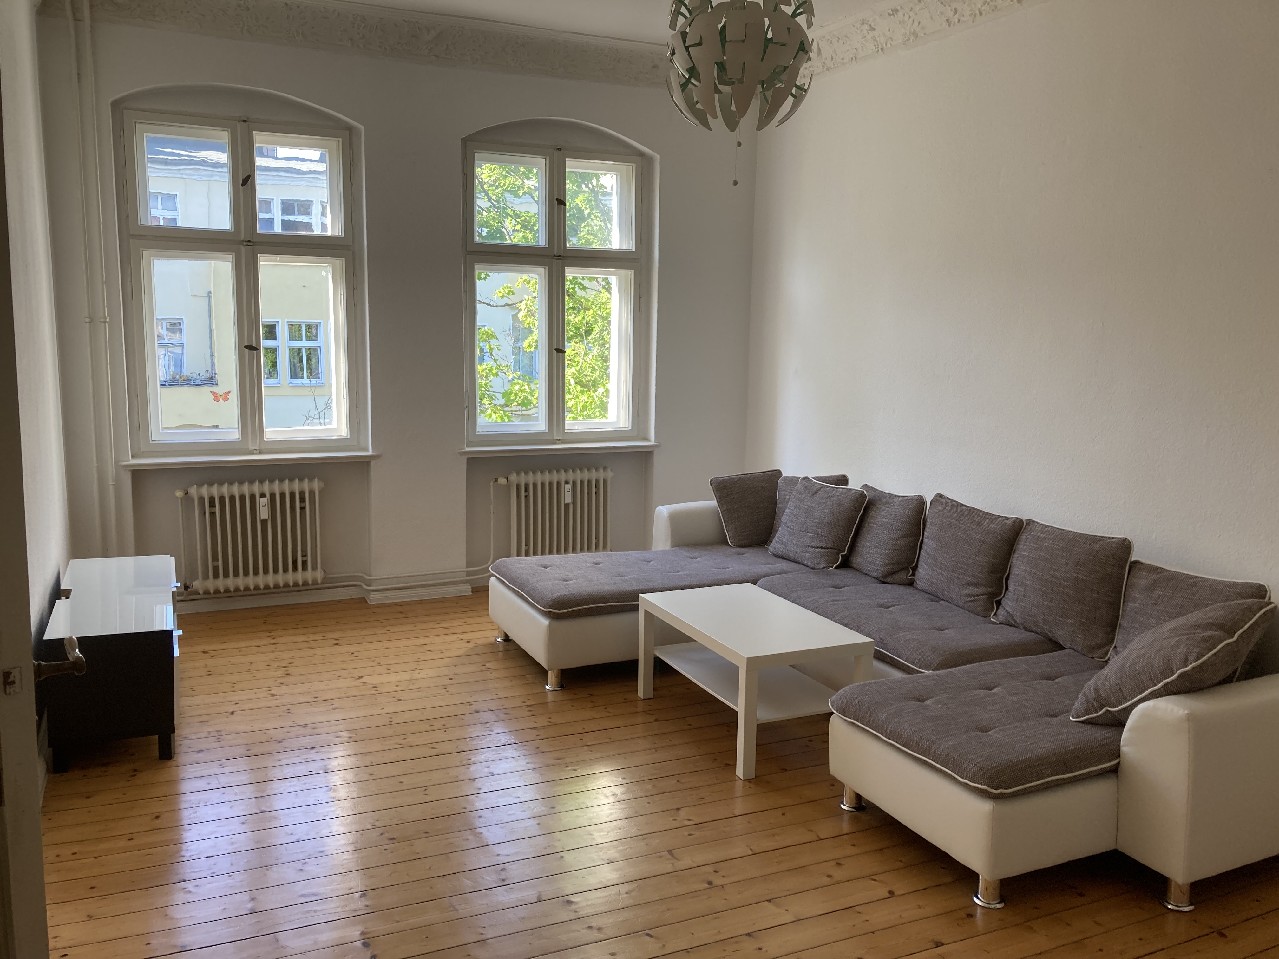 Altbau 2-Zimmer-Eigentumswohnung in Berlin-Tegel in sehr schöner Lage!